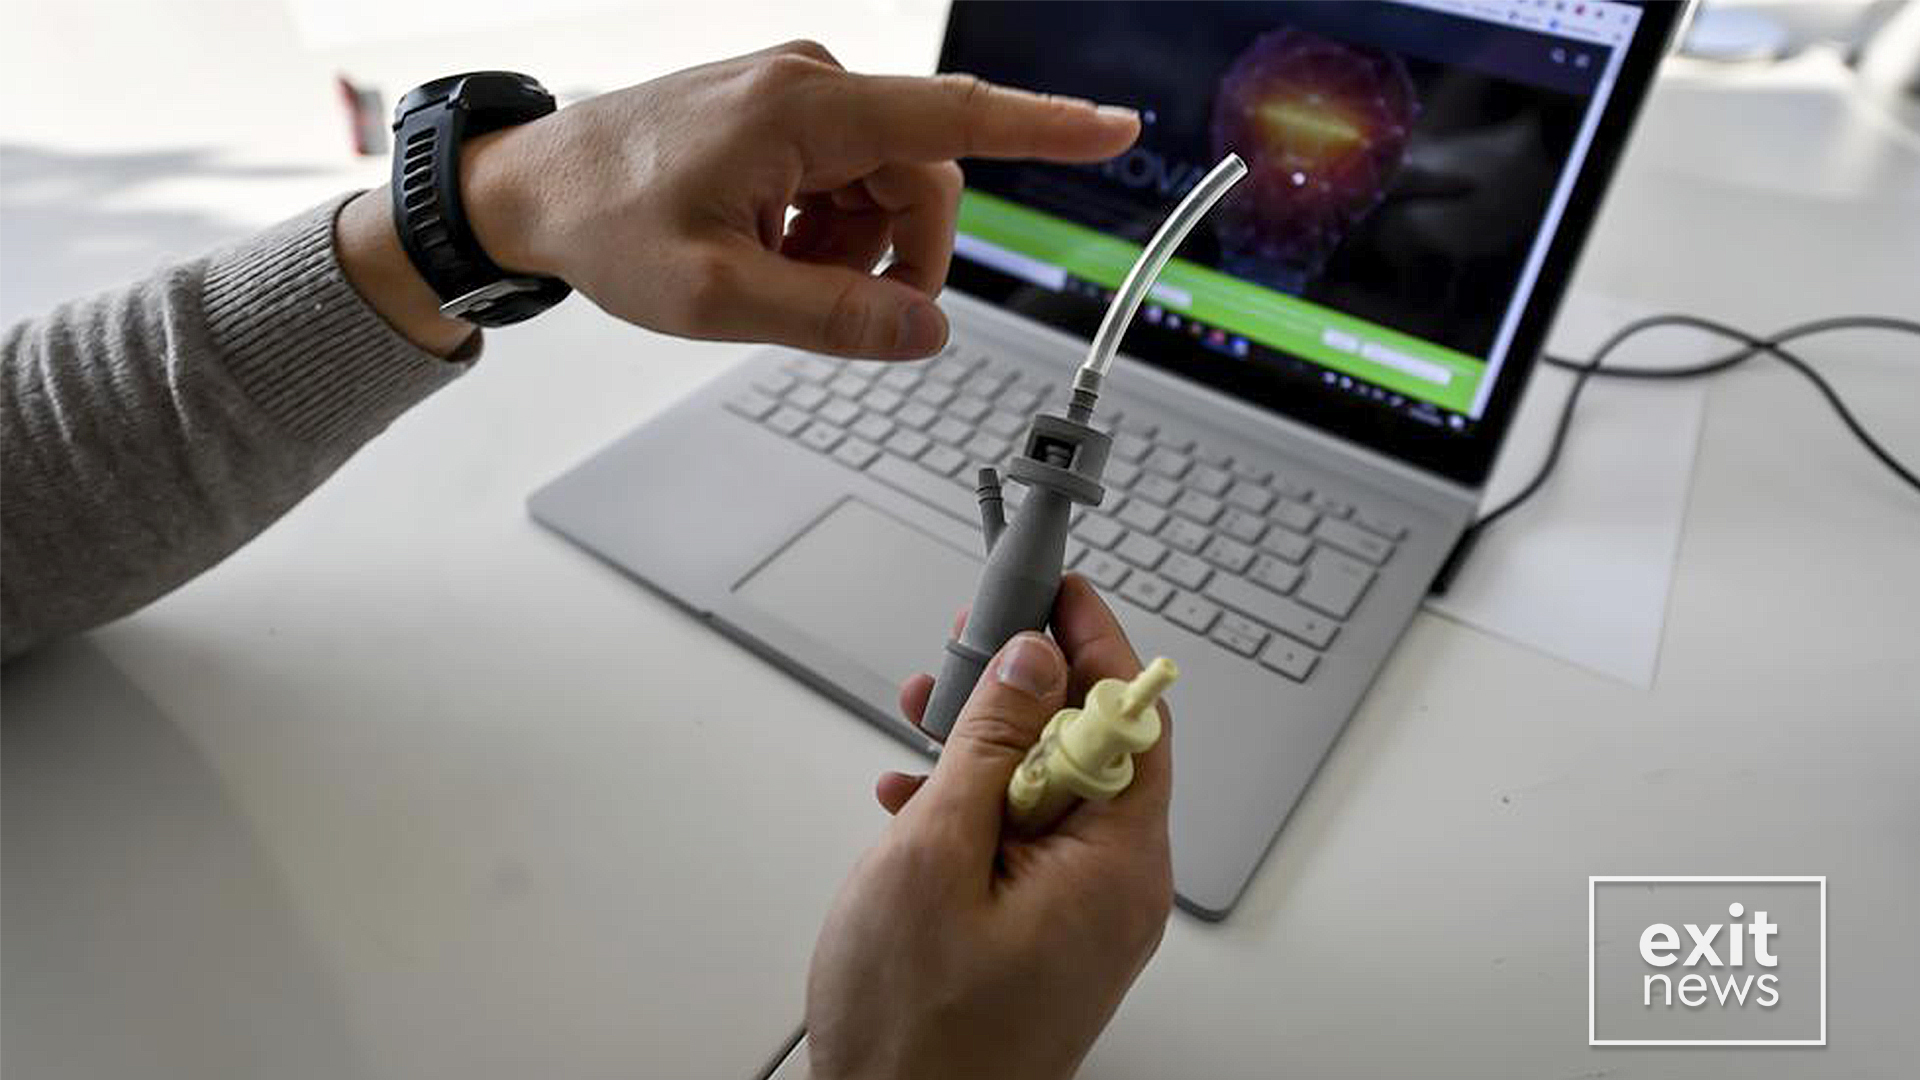 Valvula respiratorësh me printim 3D, zgjidhja e kompanisë italiane që po shpëton jetë njerëzish